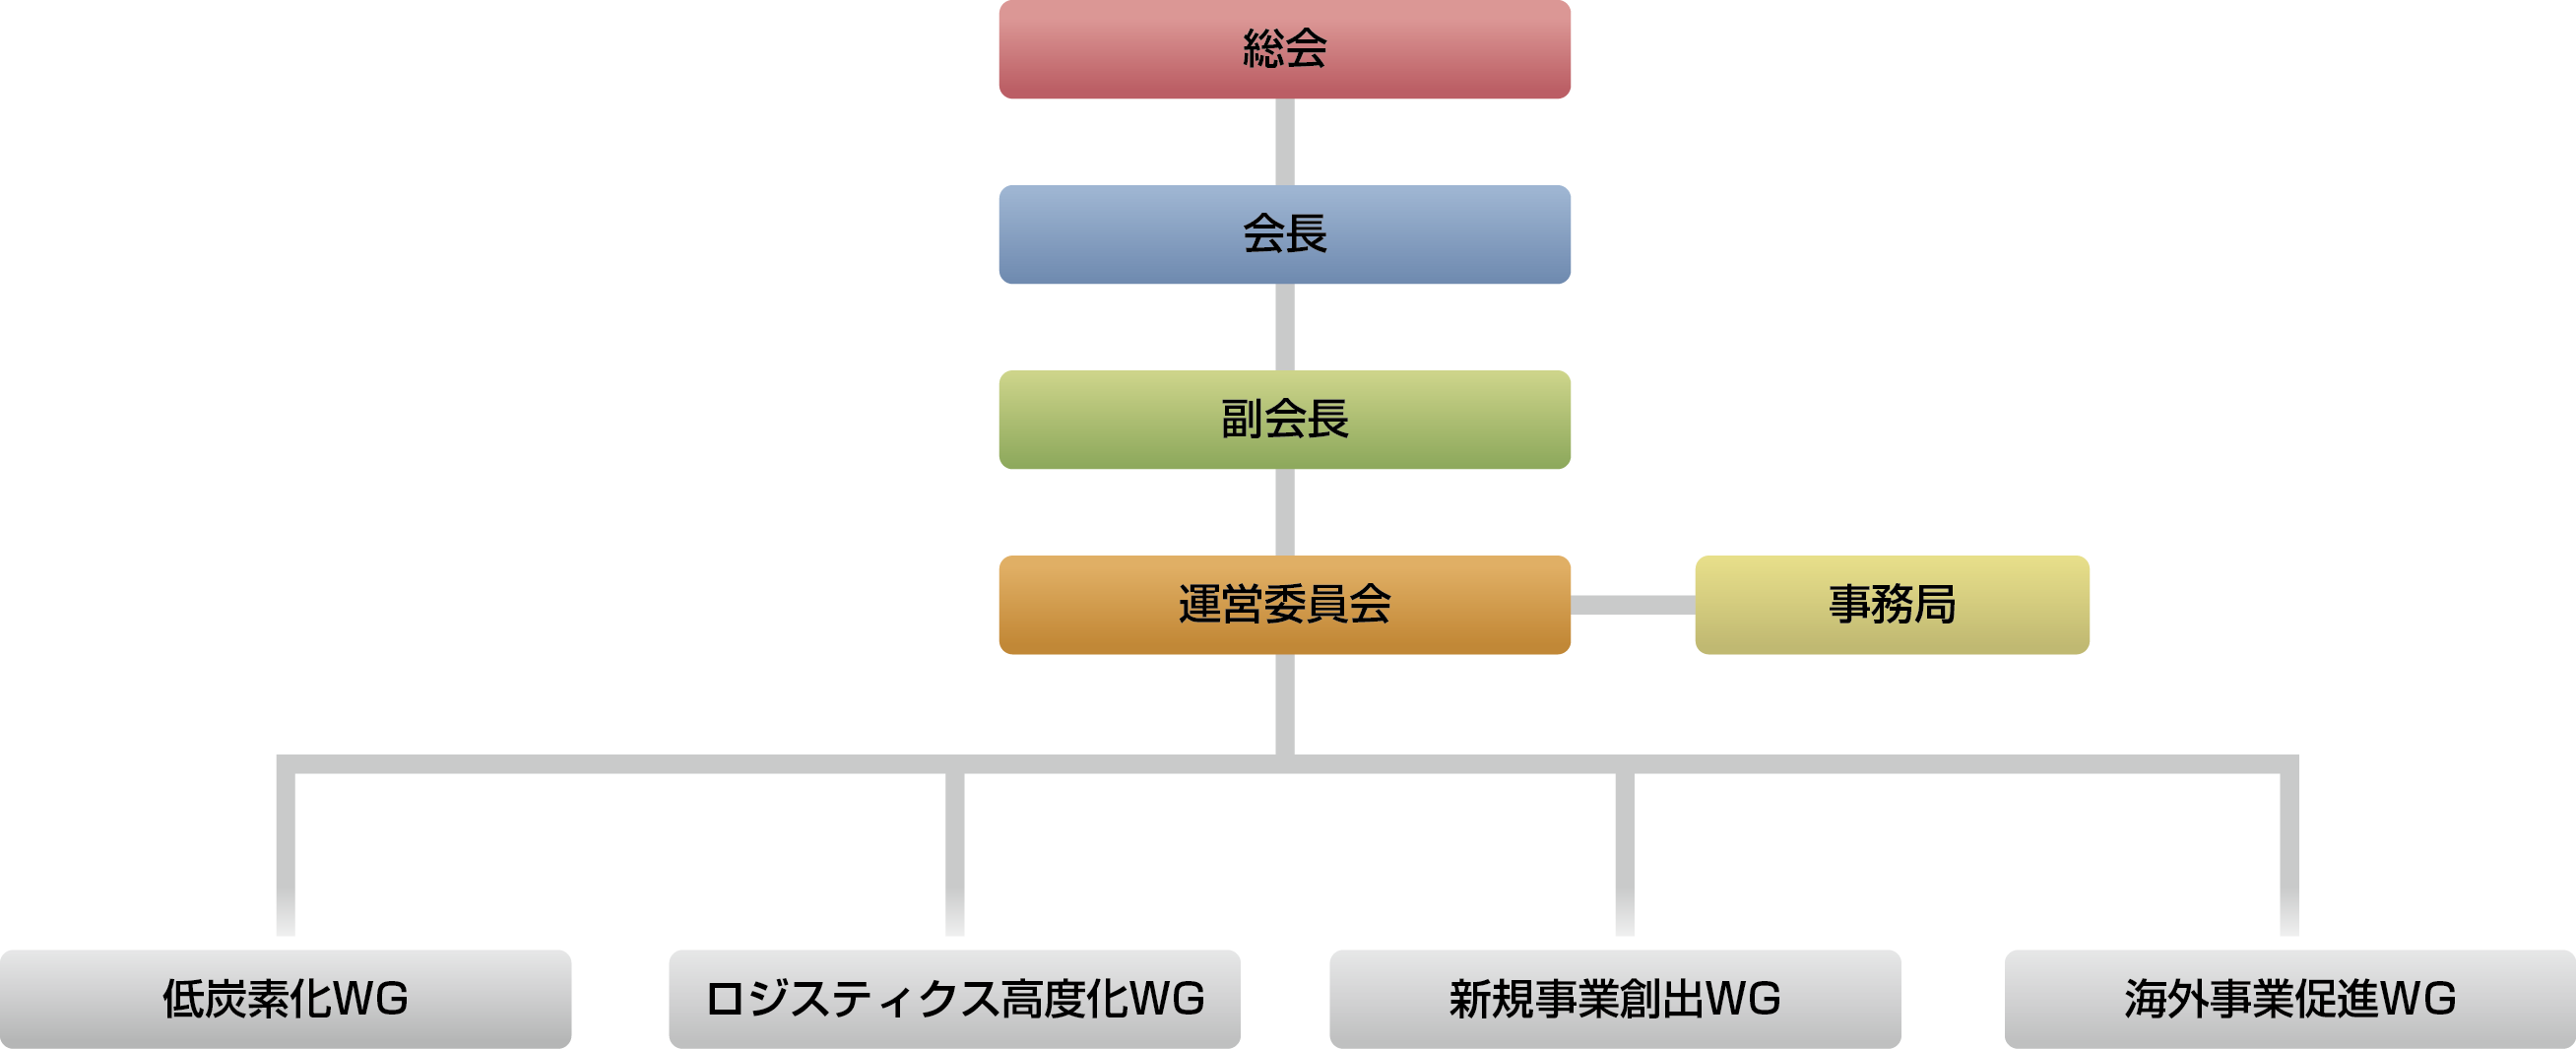 組織体制の構図